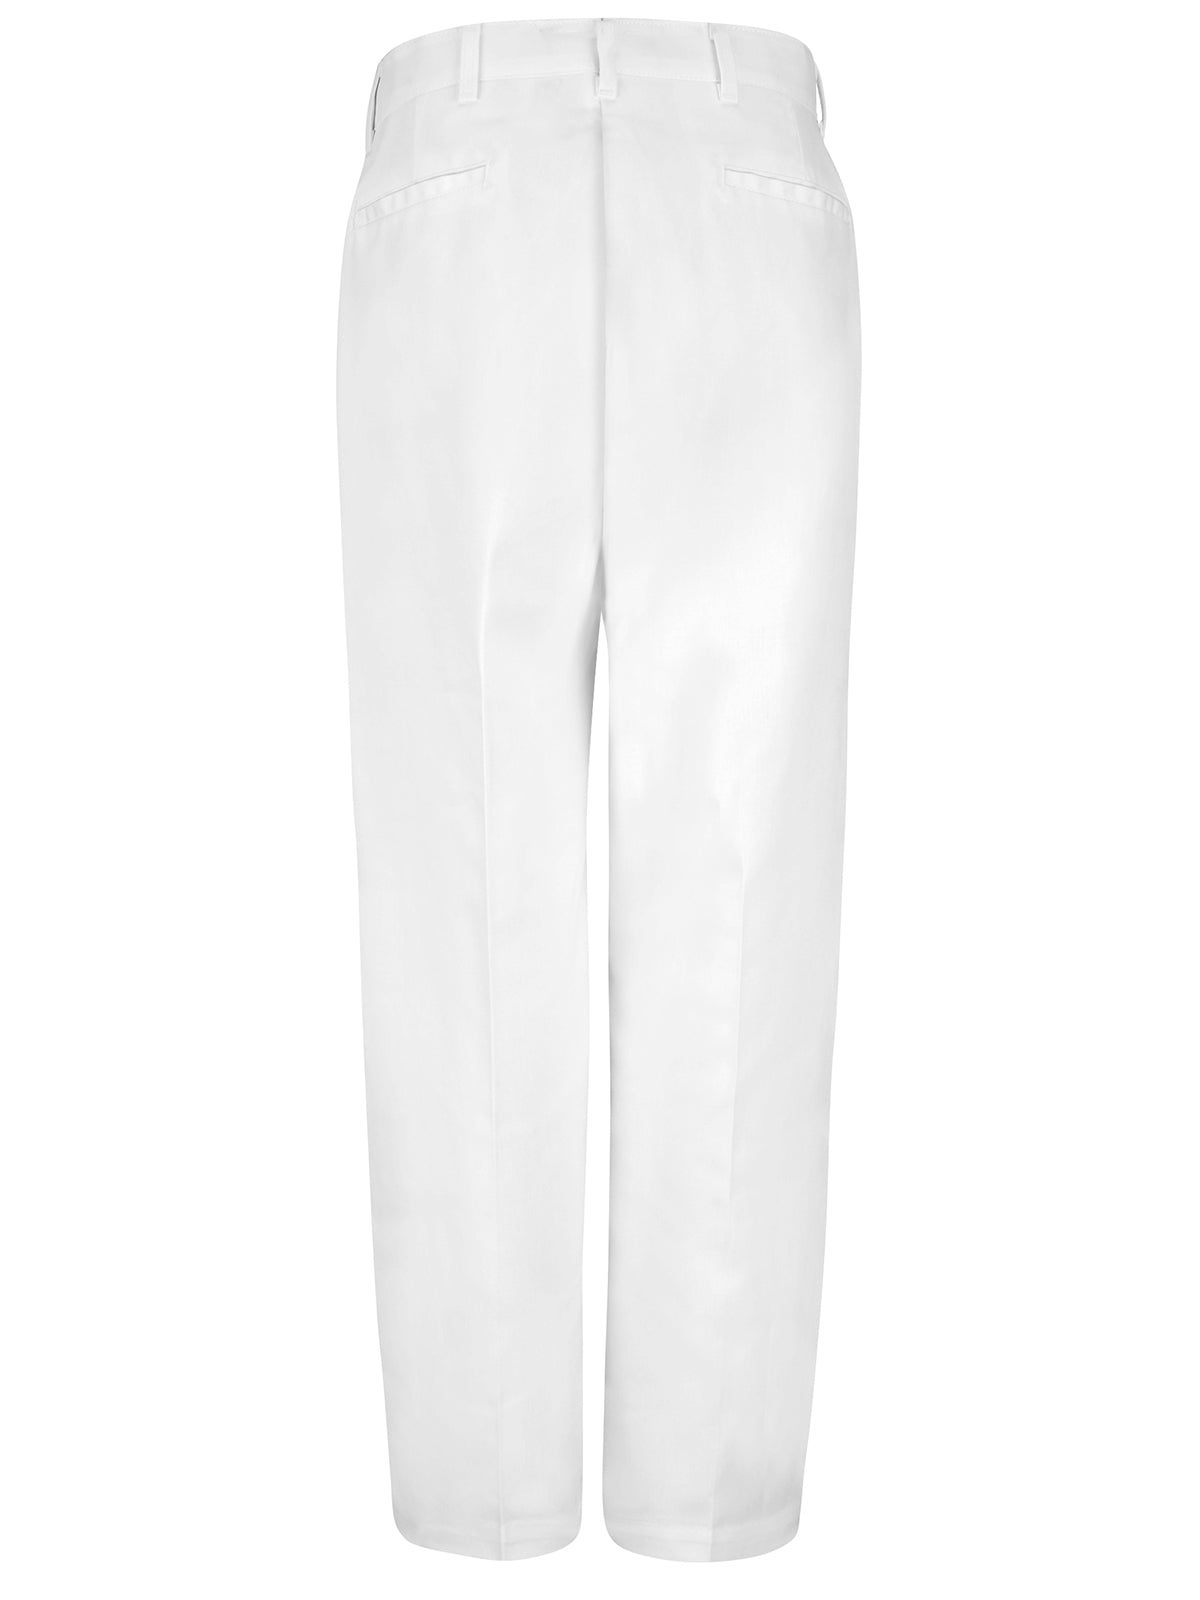 Men's 100% Polyester Specialized Work Pant (Sizes: 32x37U to 44x36U)